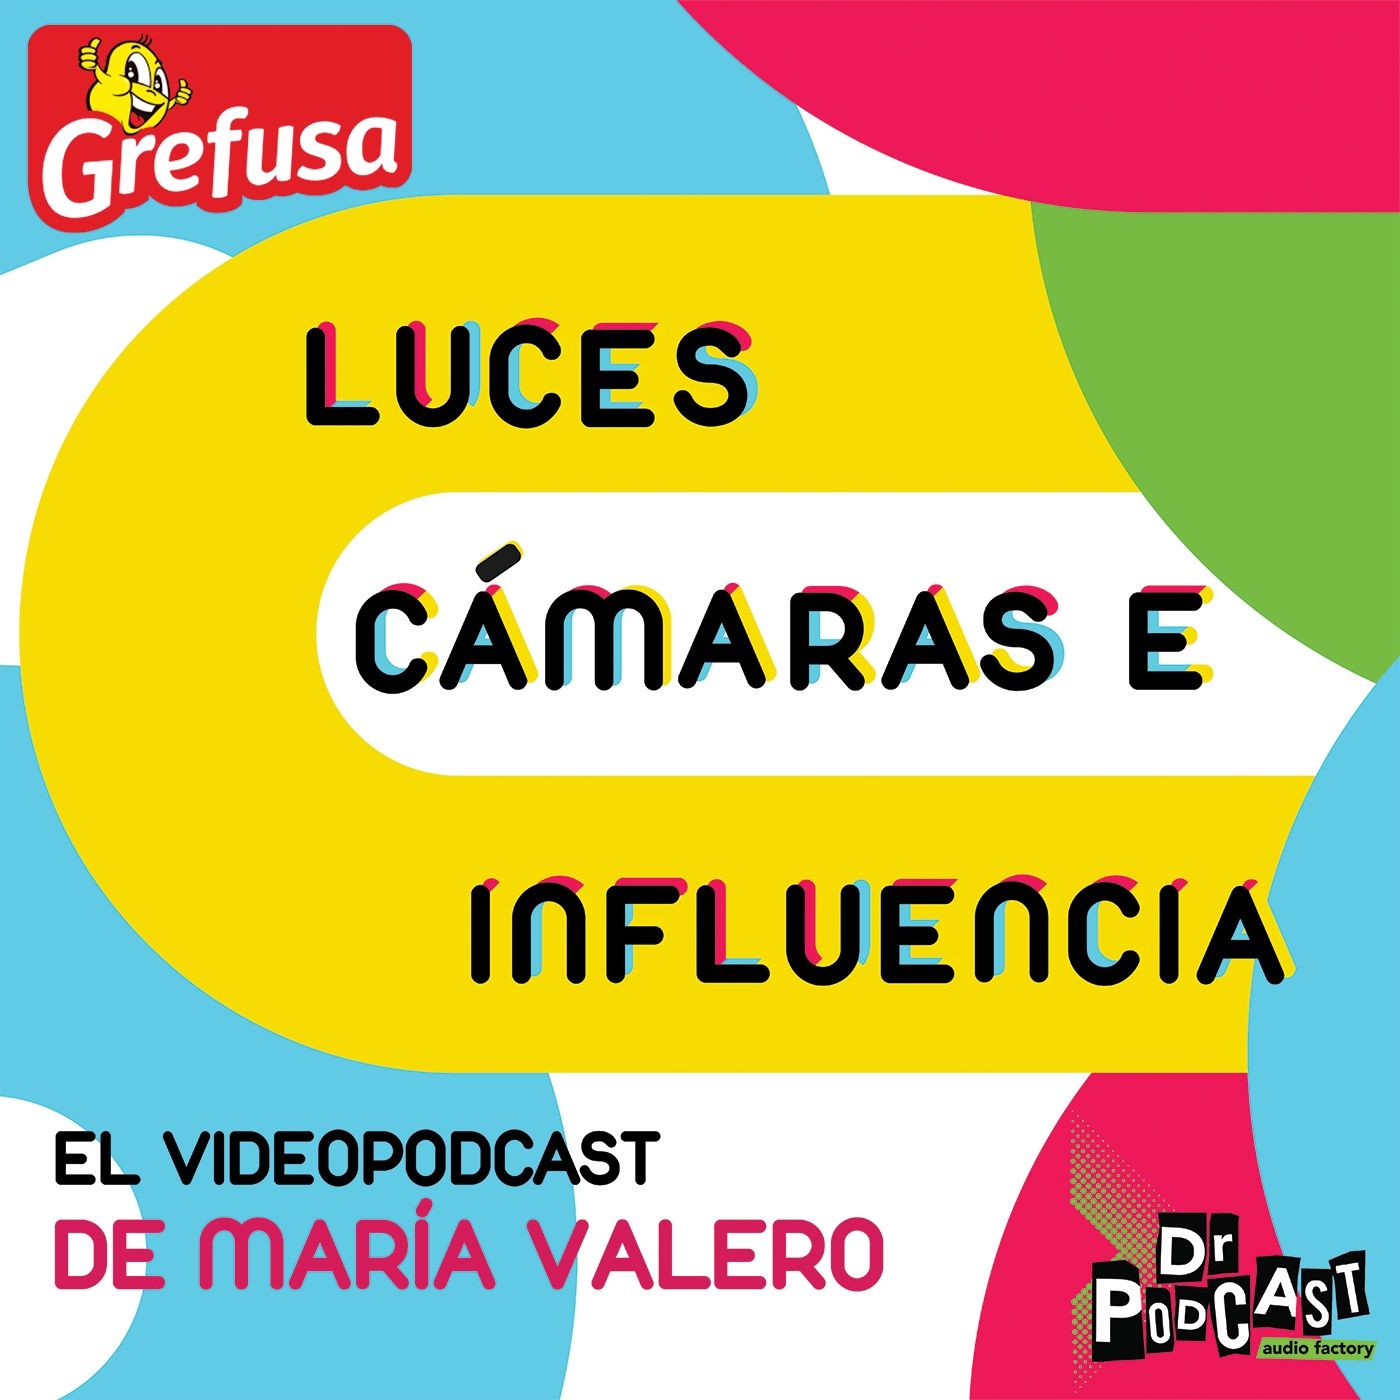 Dr Podcast - Luces, cámaras e influencia